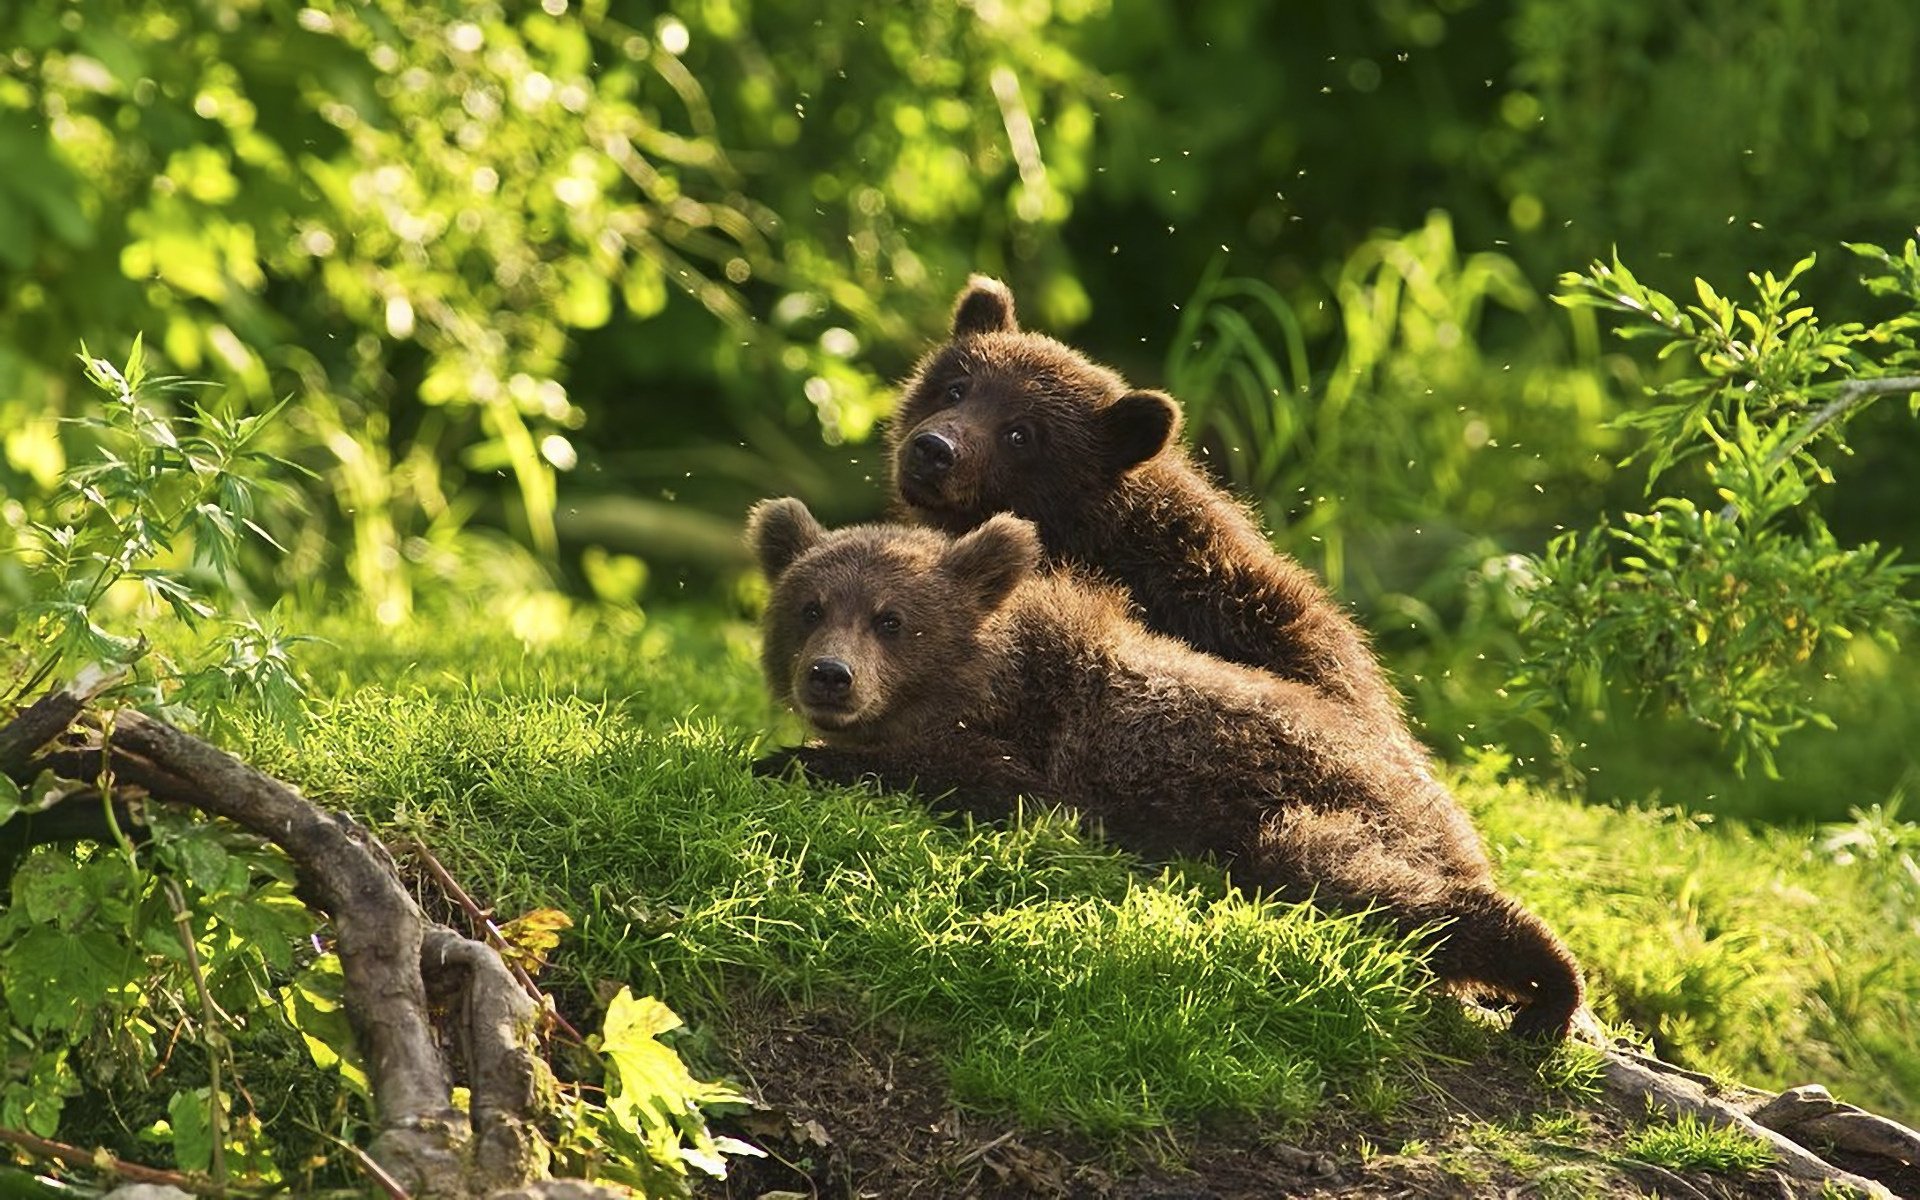 bär wallpaper,brown bear,mammal,vertebrate,terrestrial animal,grizzly bear